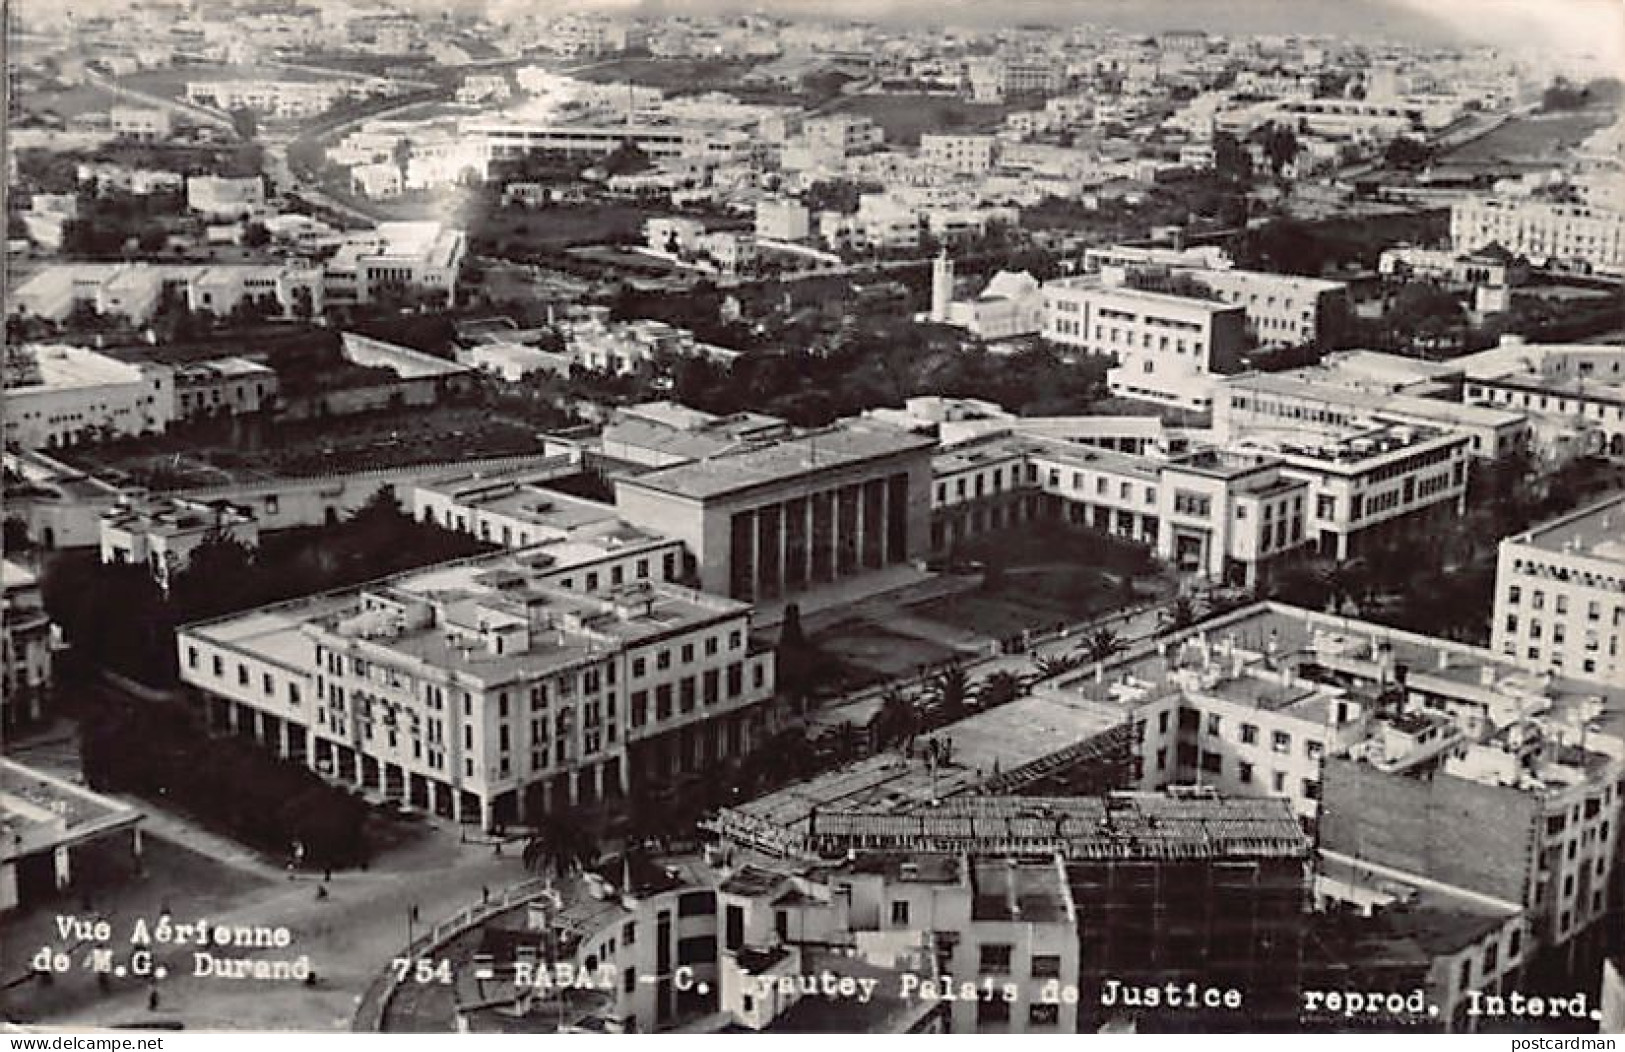 Maroc - RABAT - Cours Lyautey Et Palais De Justice - Vue Aérienne - Ed. M.G. Durand 754 - Rabat